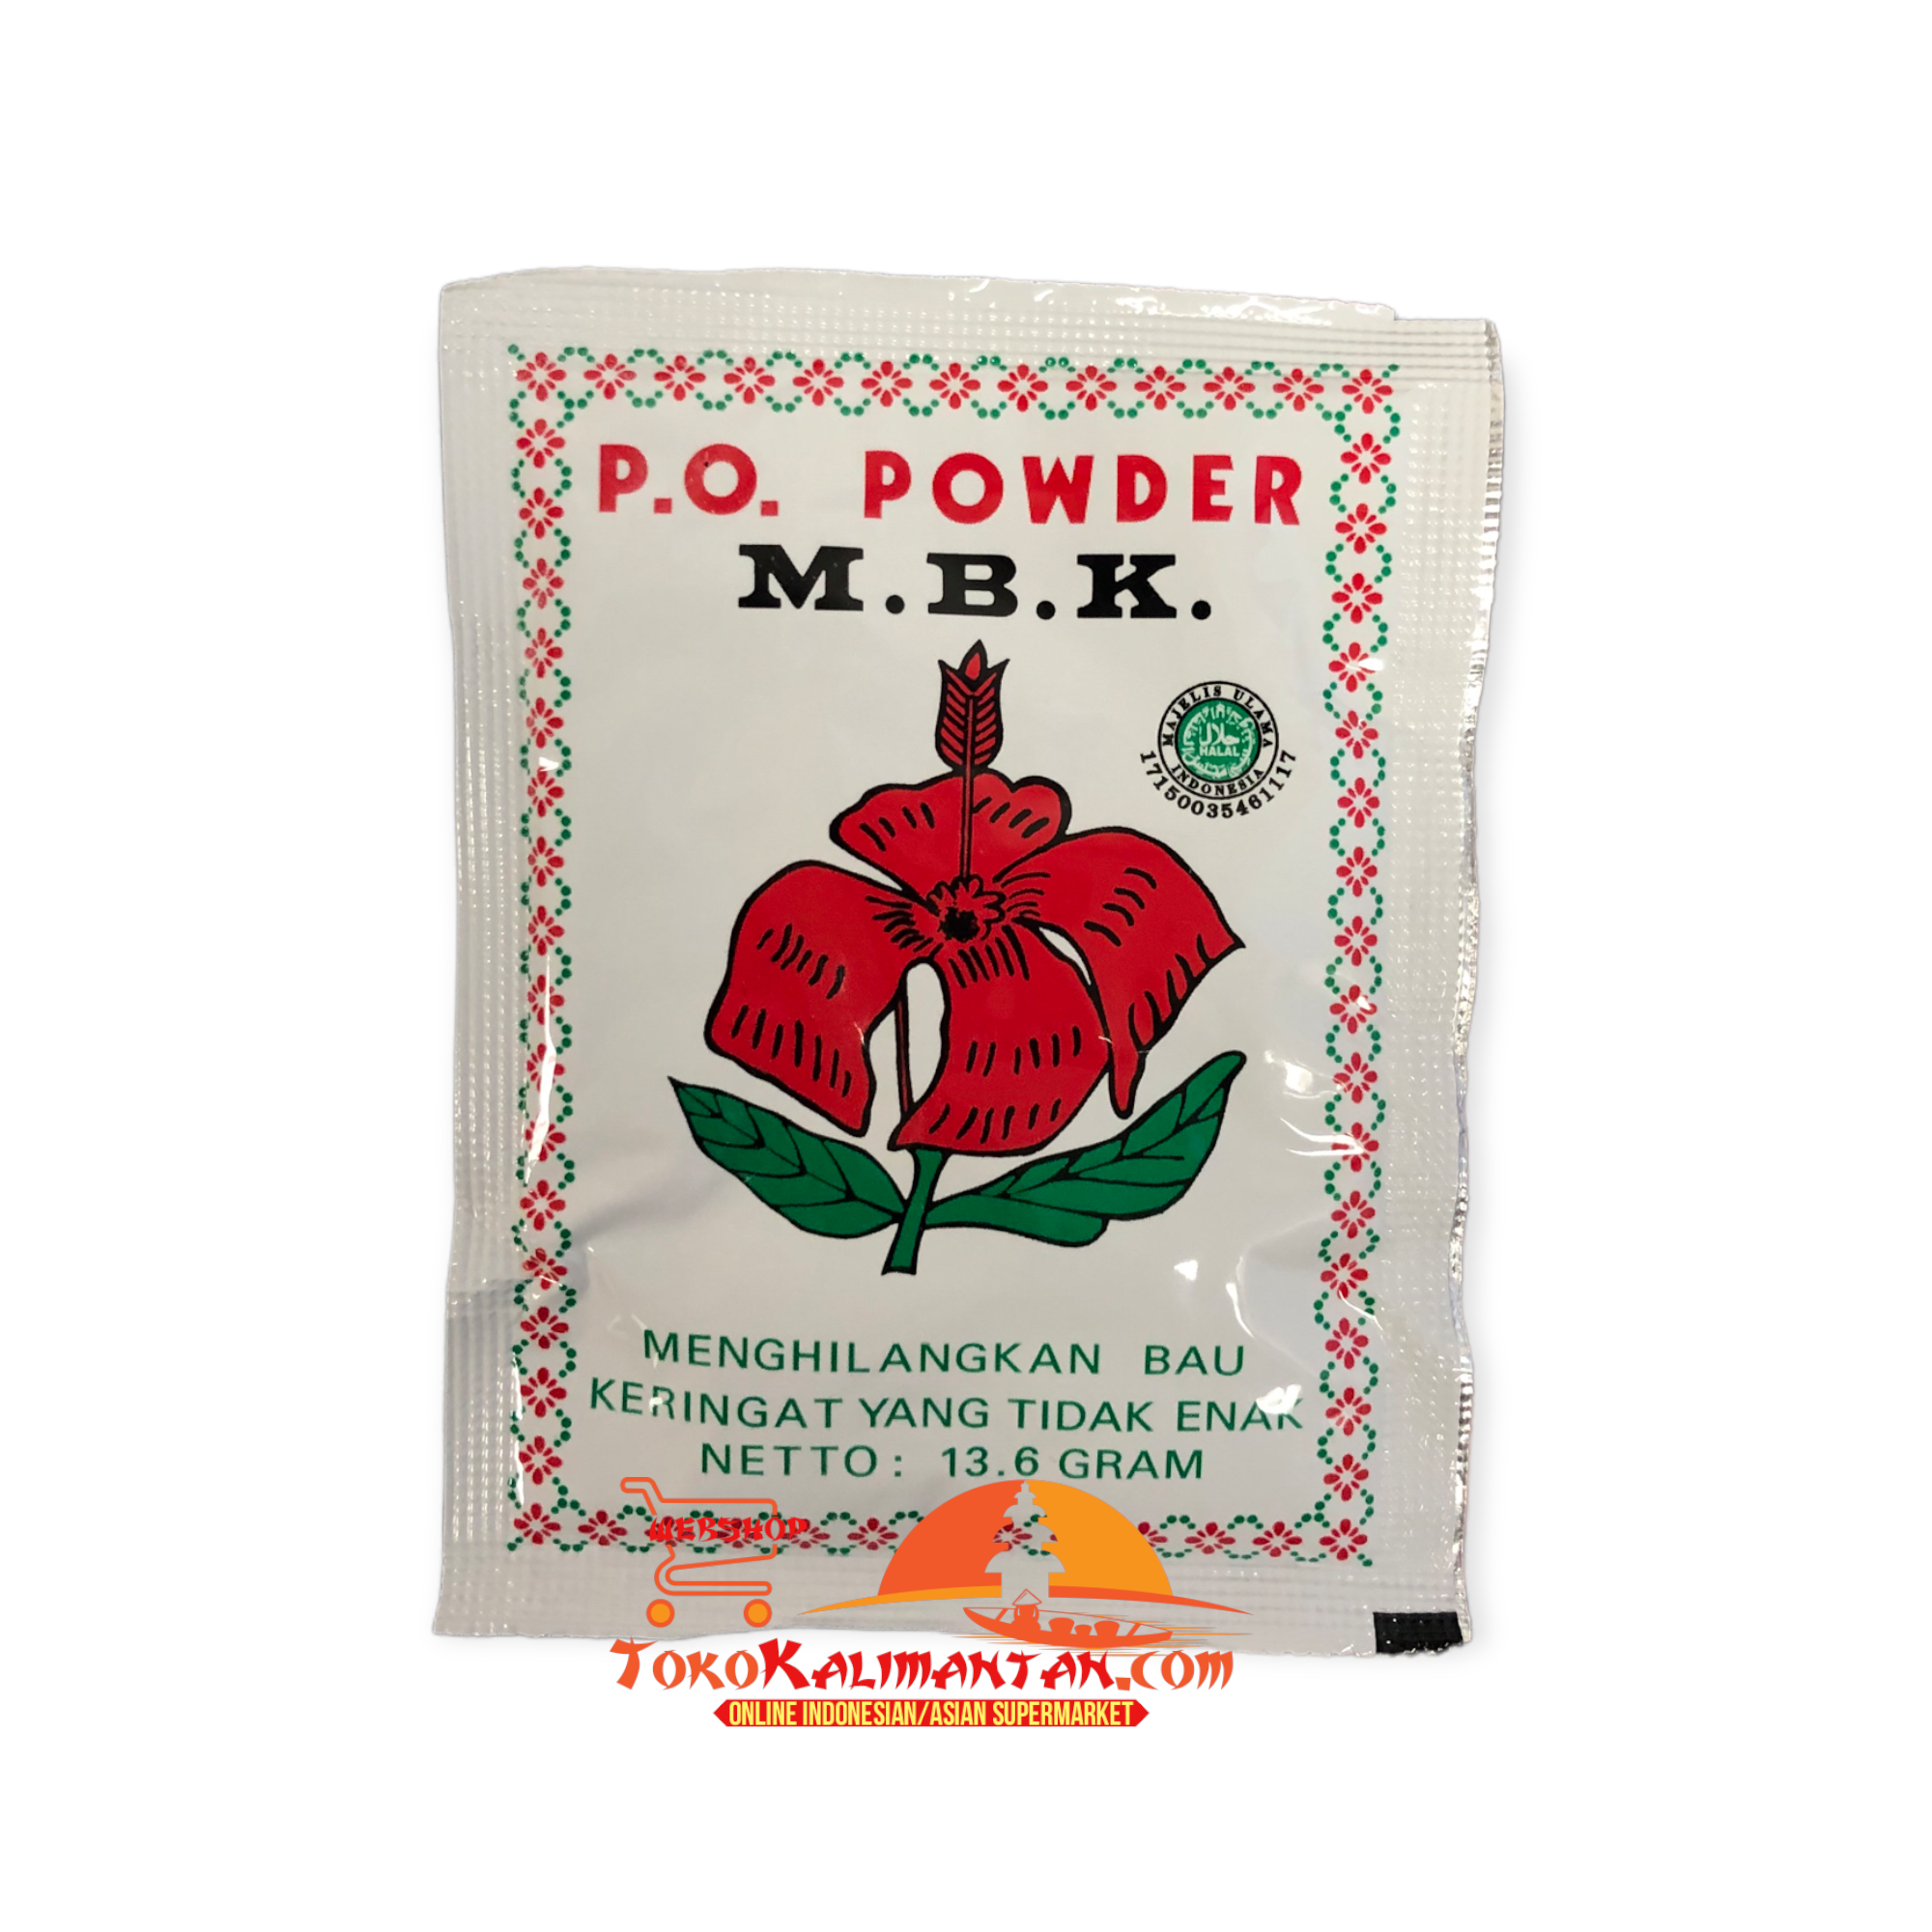 P.O POWDER M.B.K P.O Powder M.B.K - 1 PCS